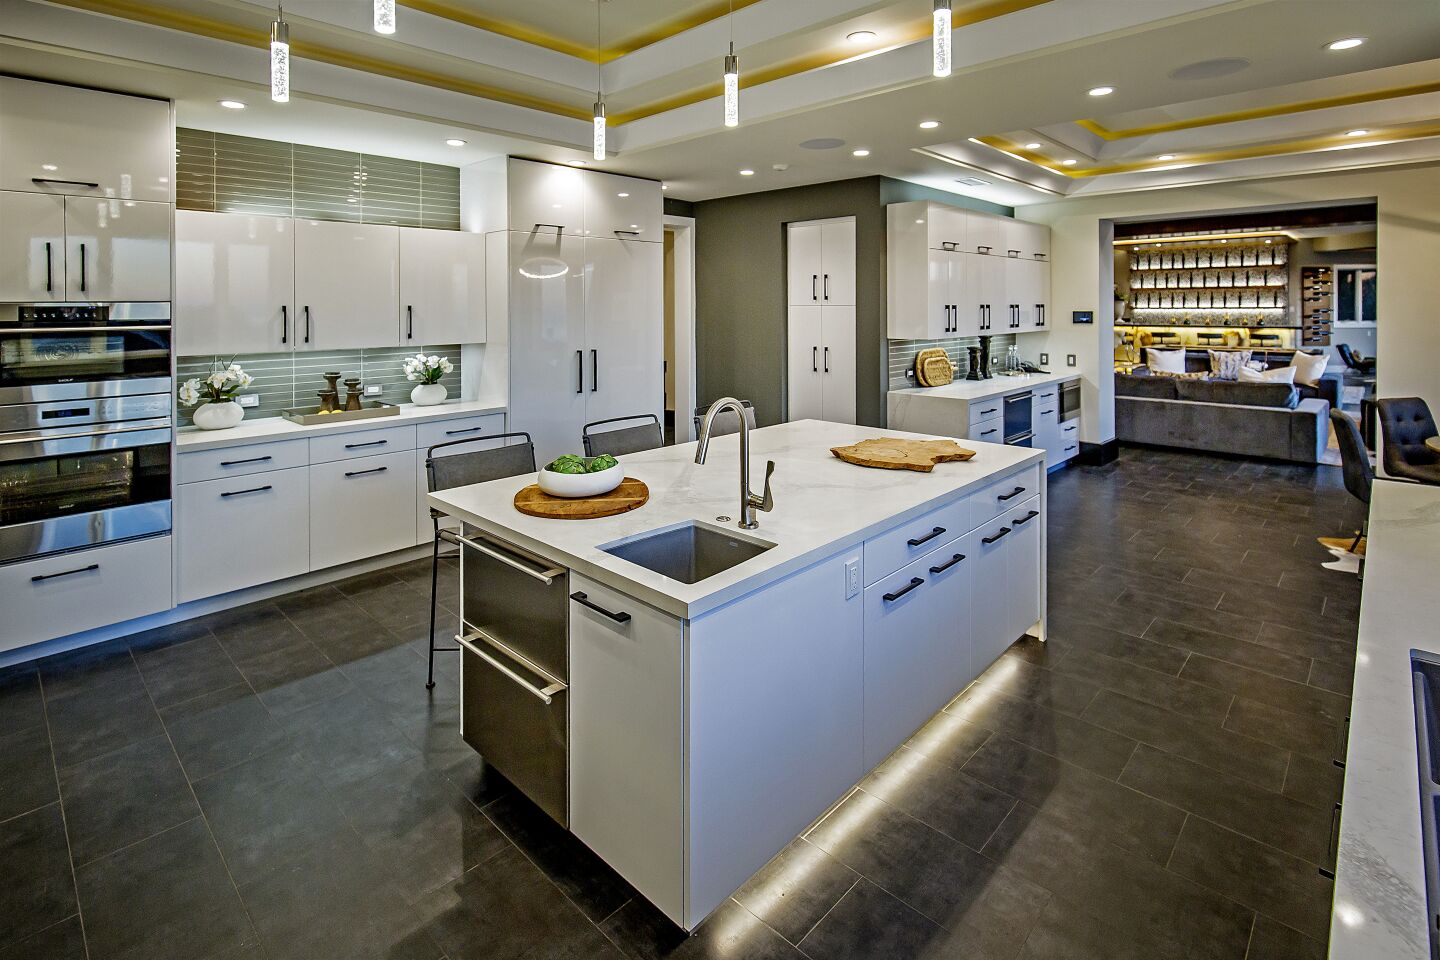 The sleek kitchen with breakfast nook.